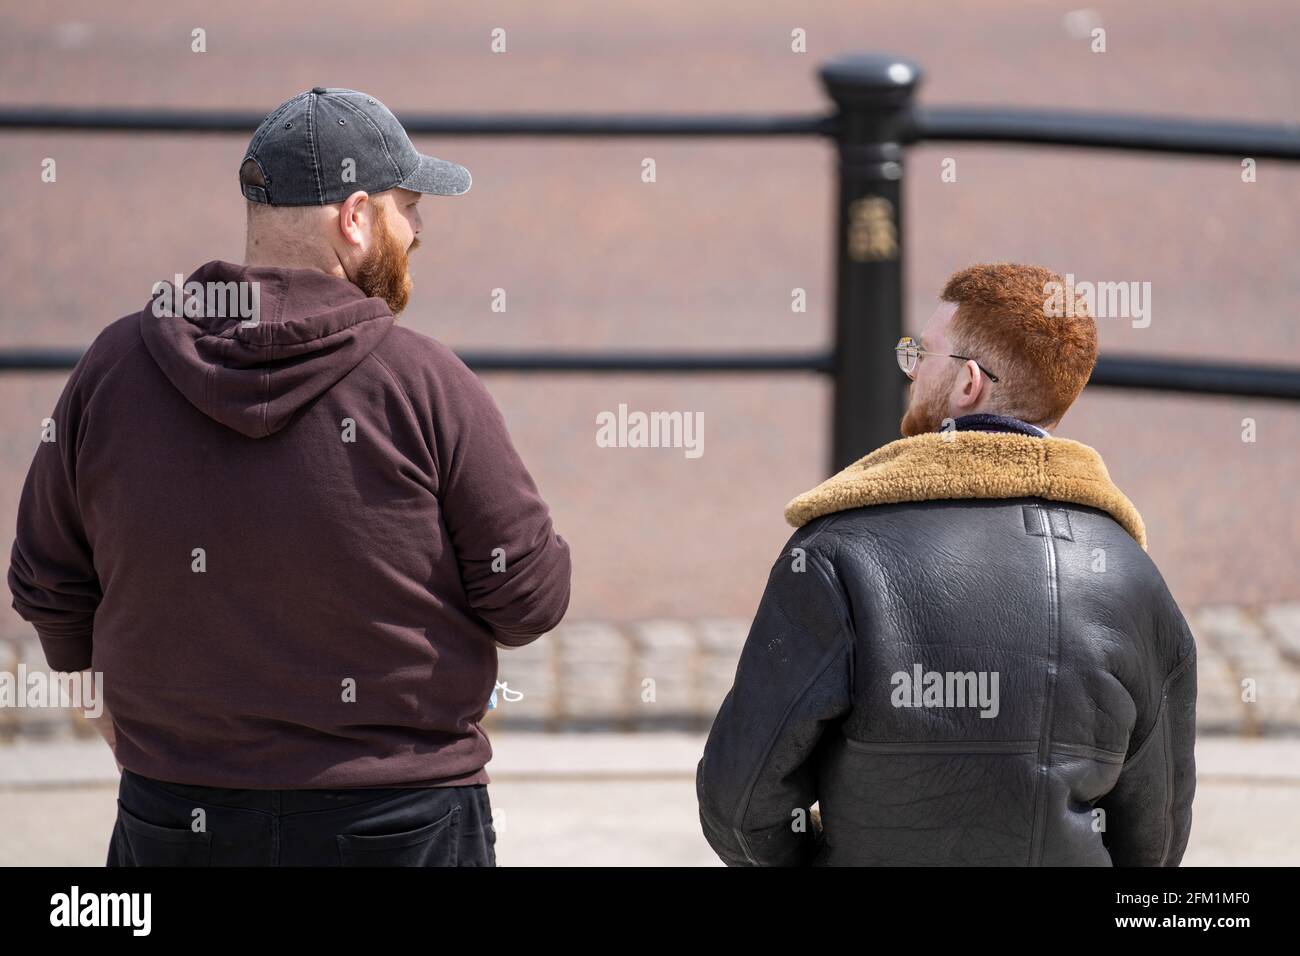 LONDRA, Regno Unito – 01 maggio 2021: Due uomini con peli di zenzero e barba sono visti insieme in piedi sul Mall, vista posteriore. Parlando durante la protesta di Kill the Bill Foto Stock